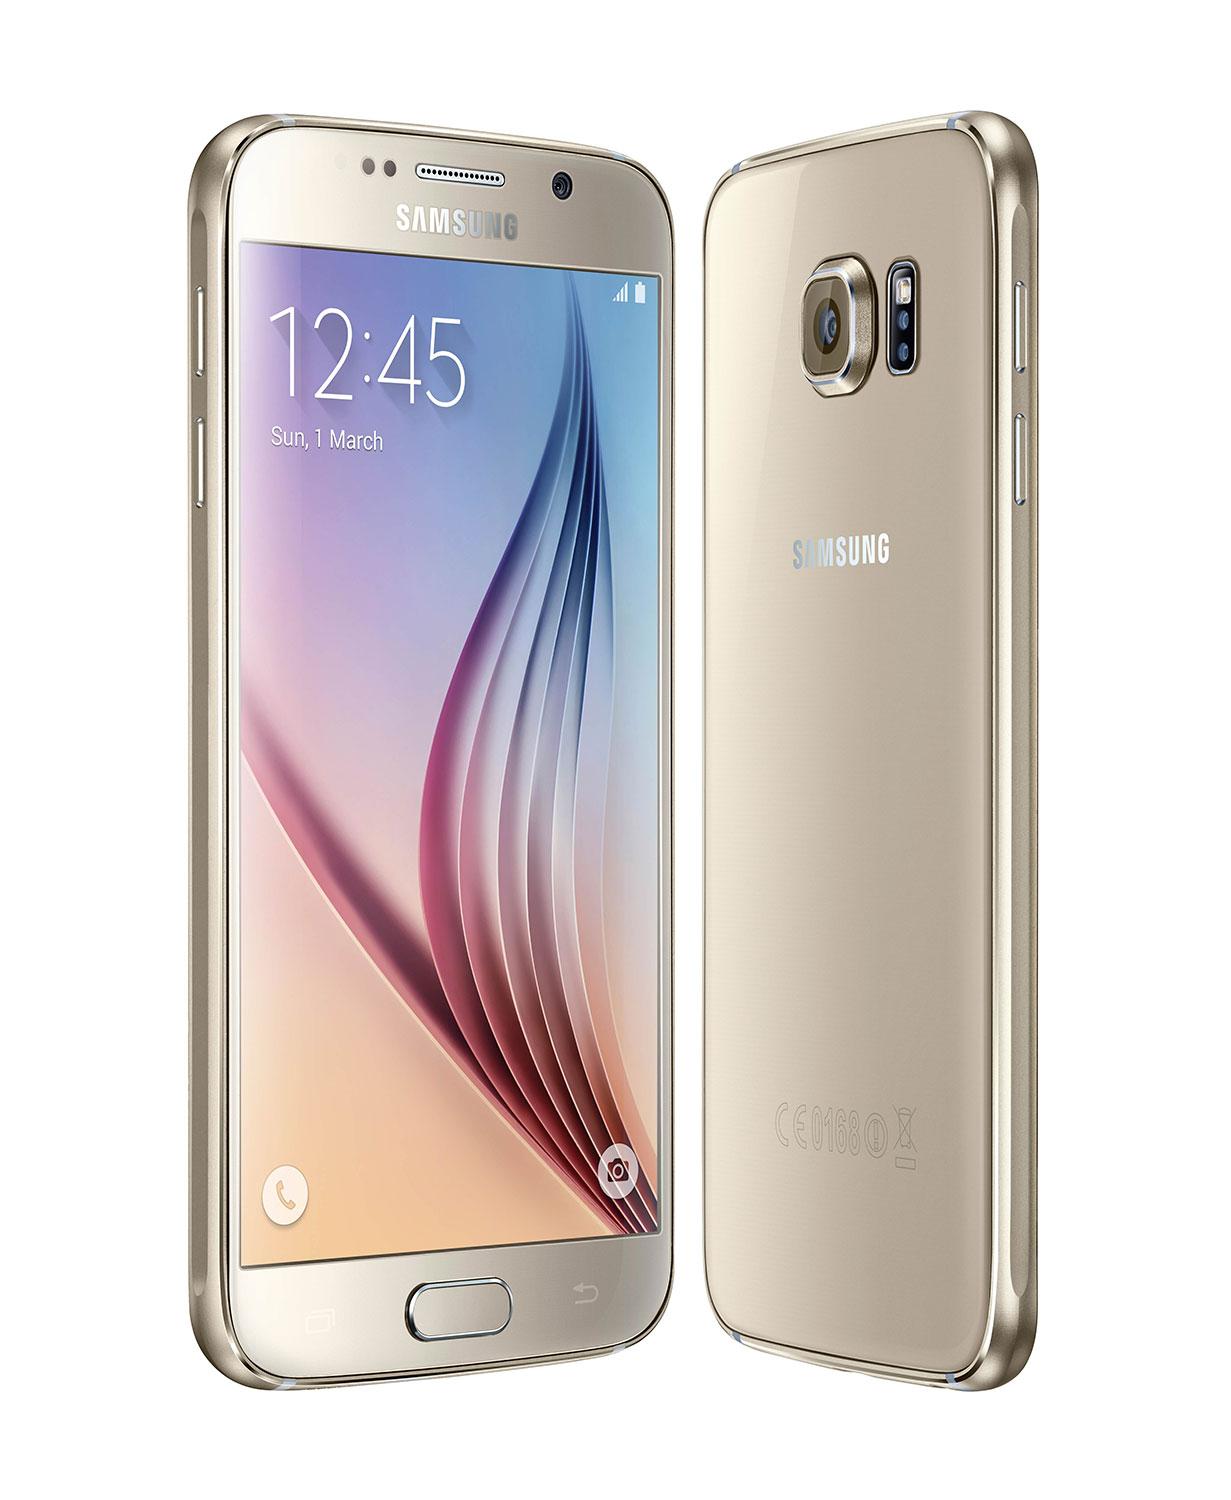 Samsung Galaxy S6 aparece en datos de importación con pantalla de 5 pulgadas